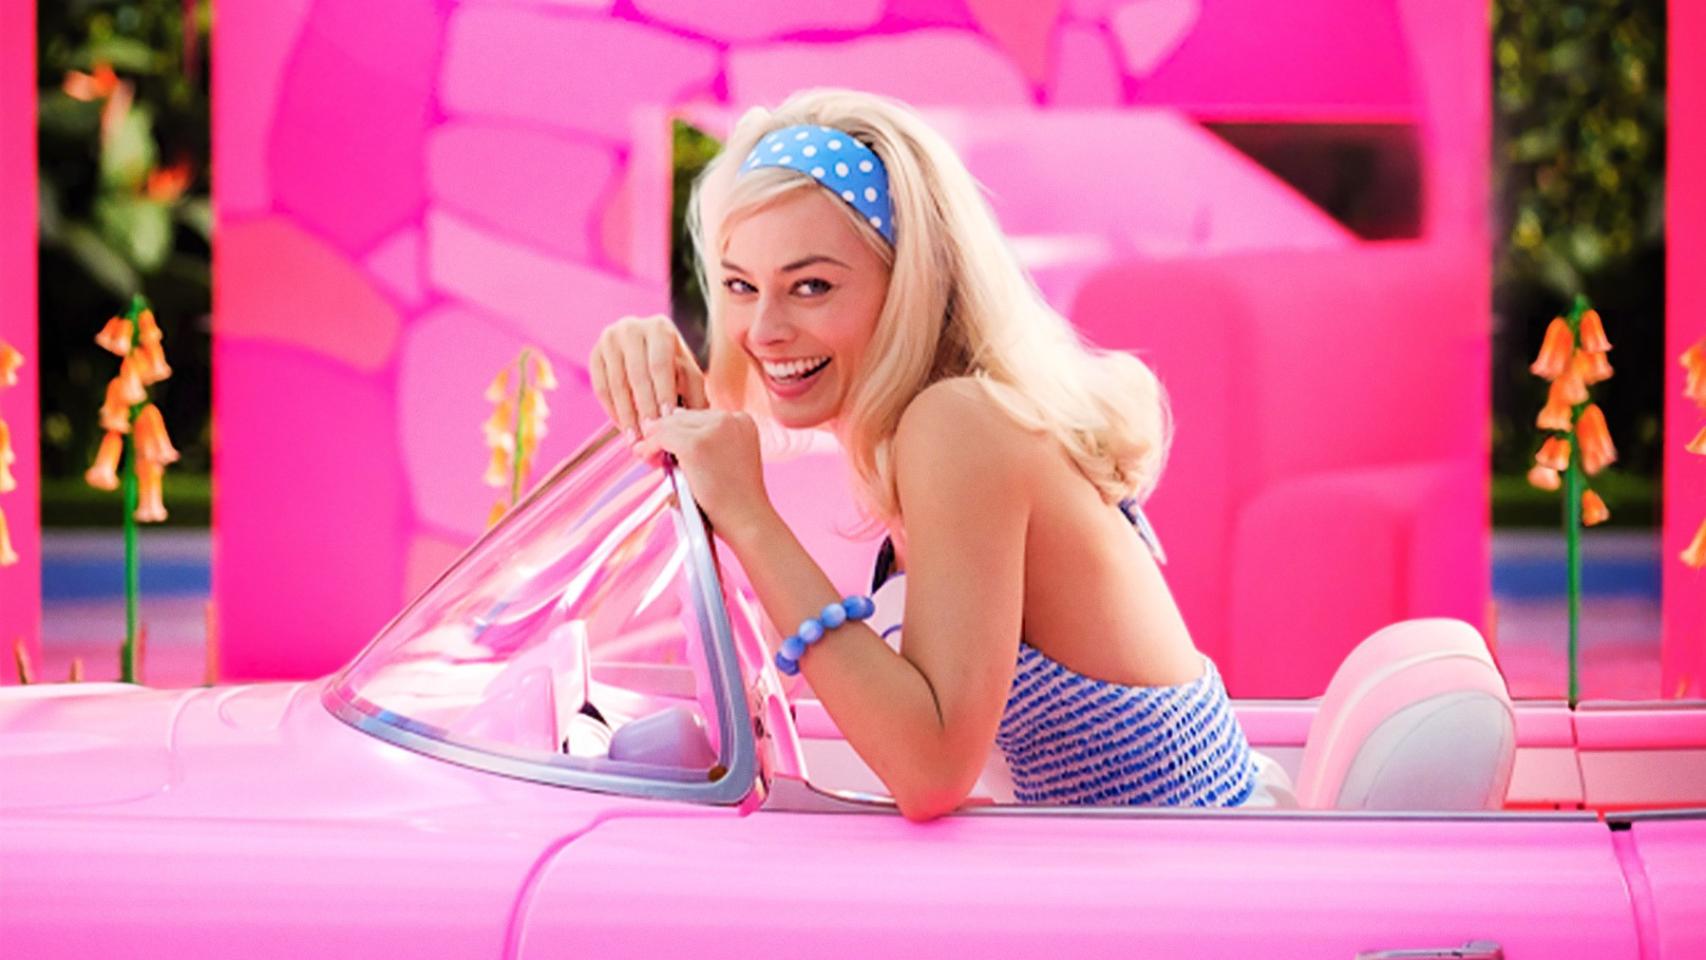 La muñeca Barbie de Margot Robbie con el vestido rosa icónico es